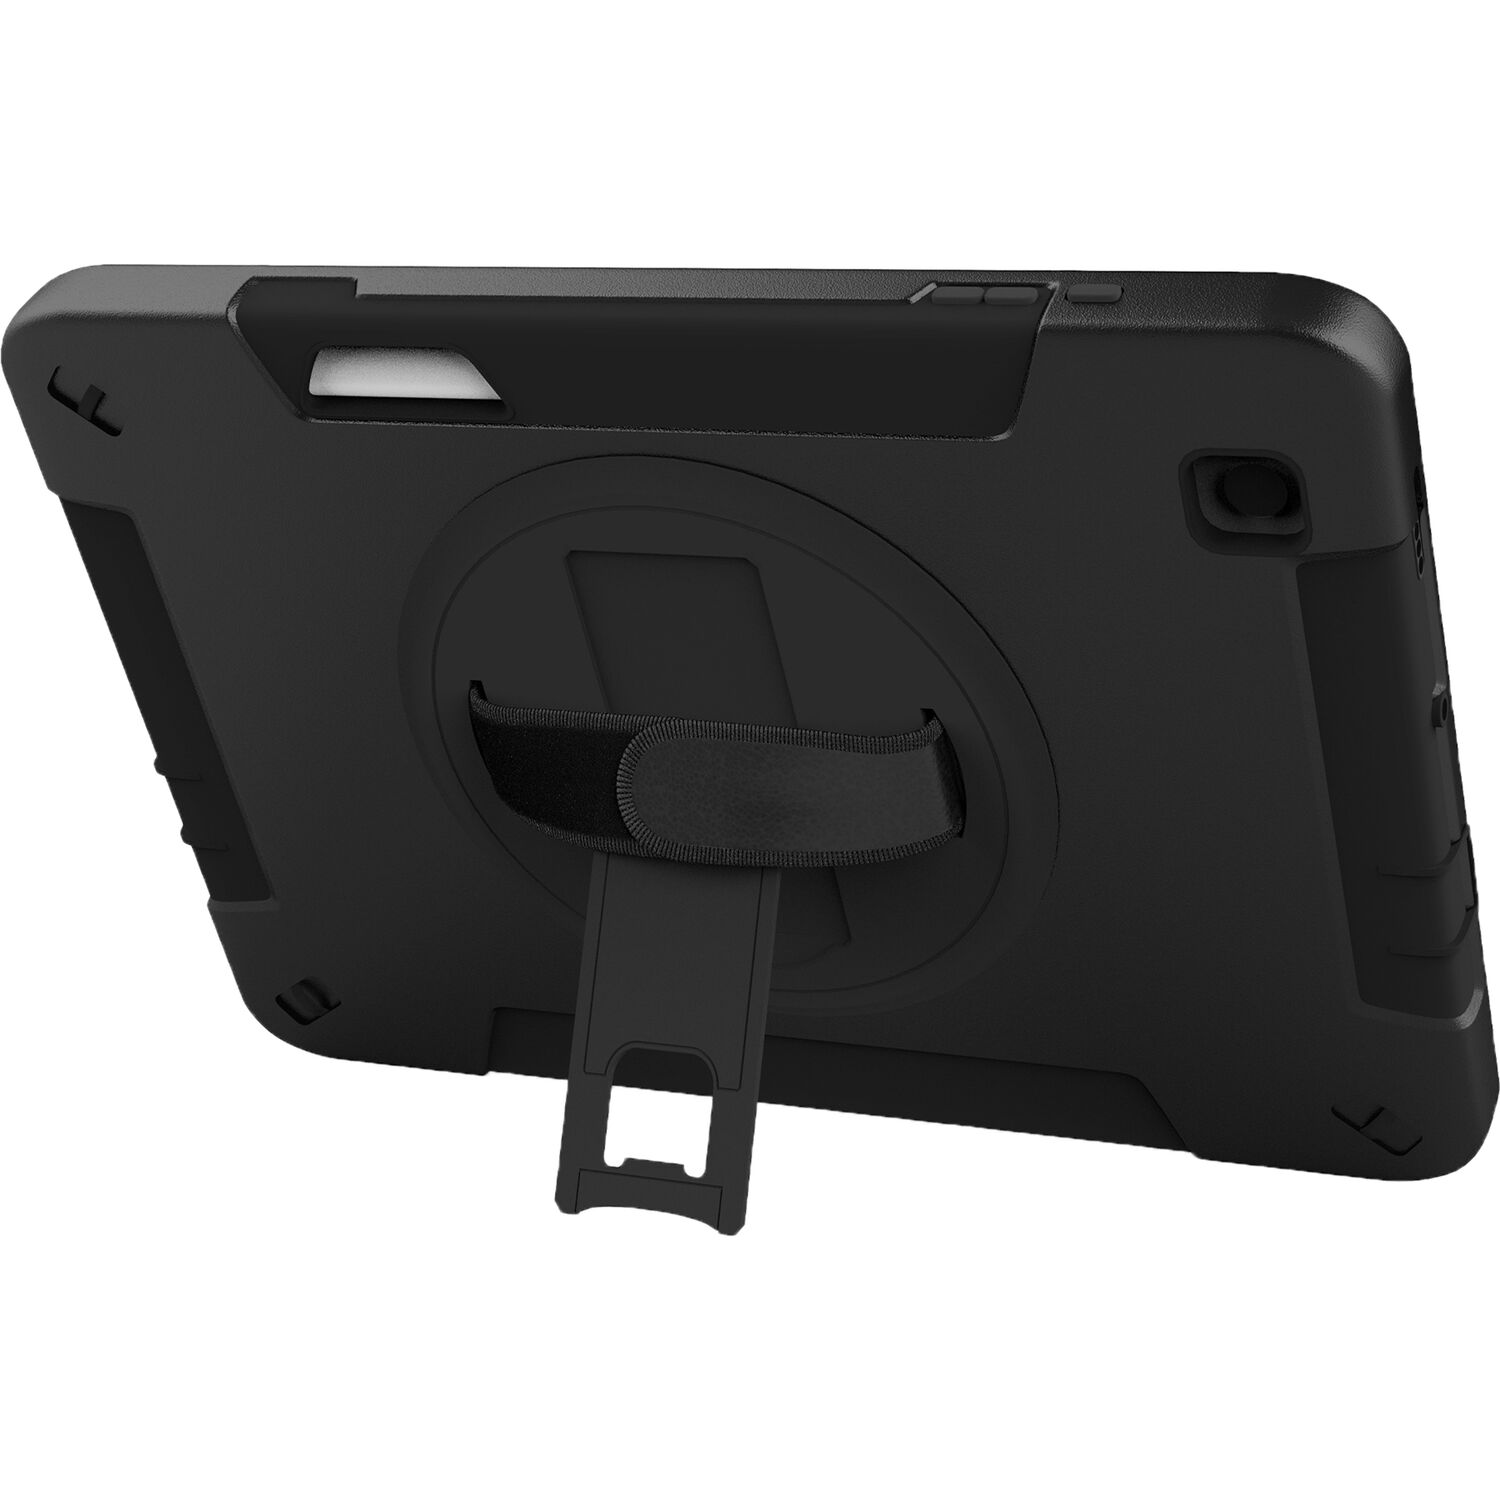 Funda Protectora Cta Digital con Soporte Giratorio y Patilla para Samsung Galaxy Tab S6 Lite